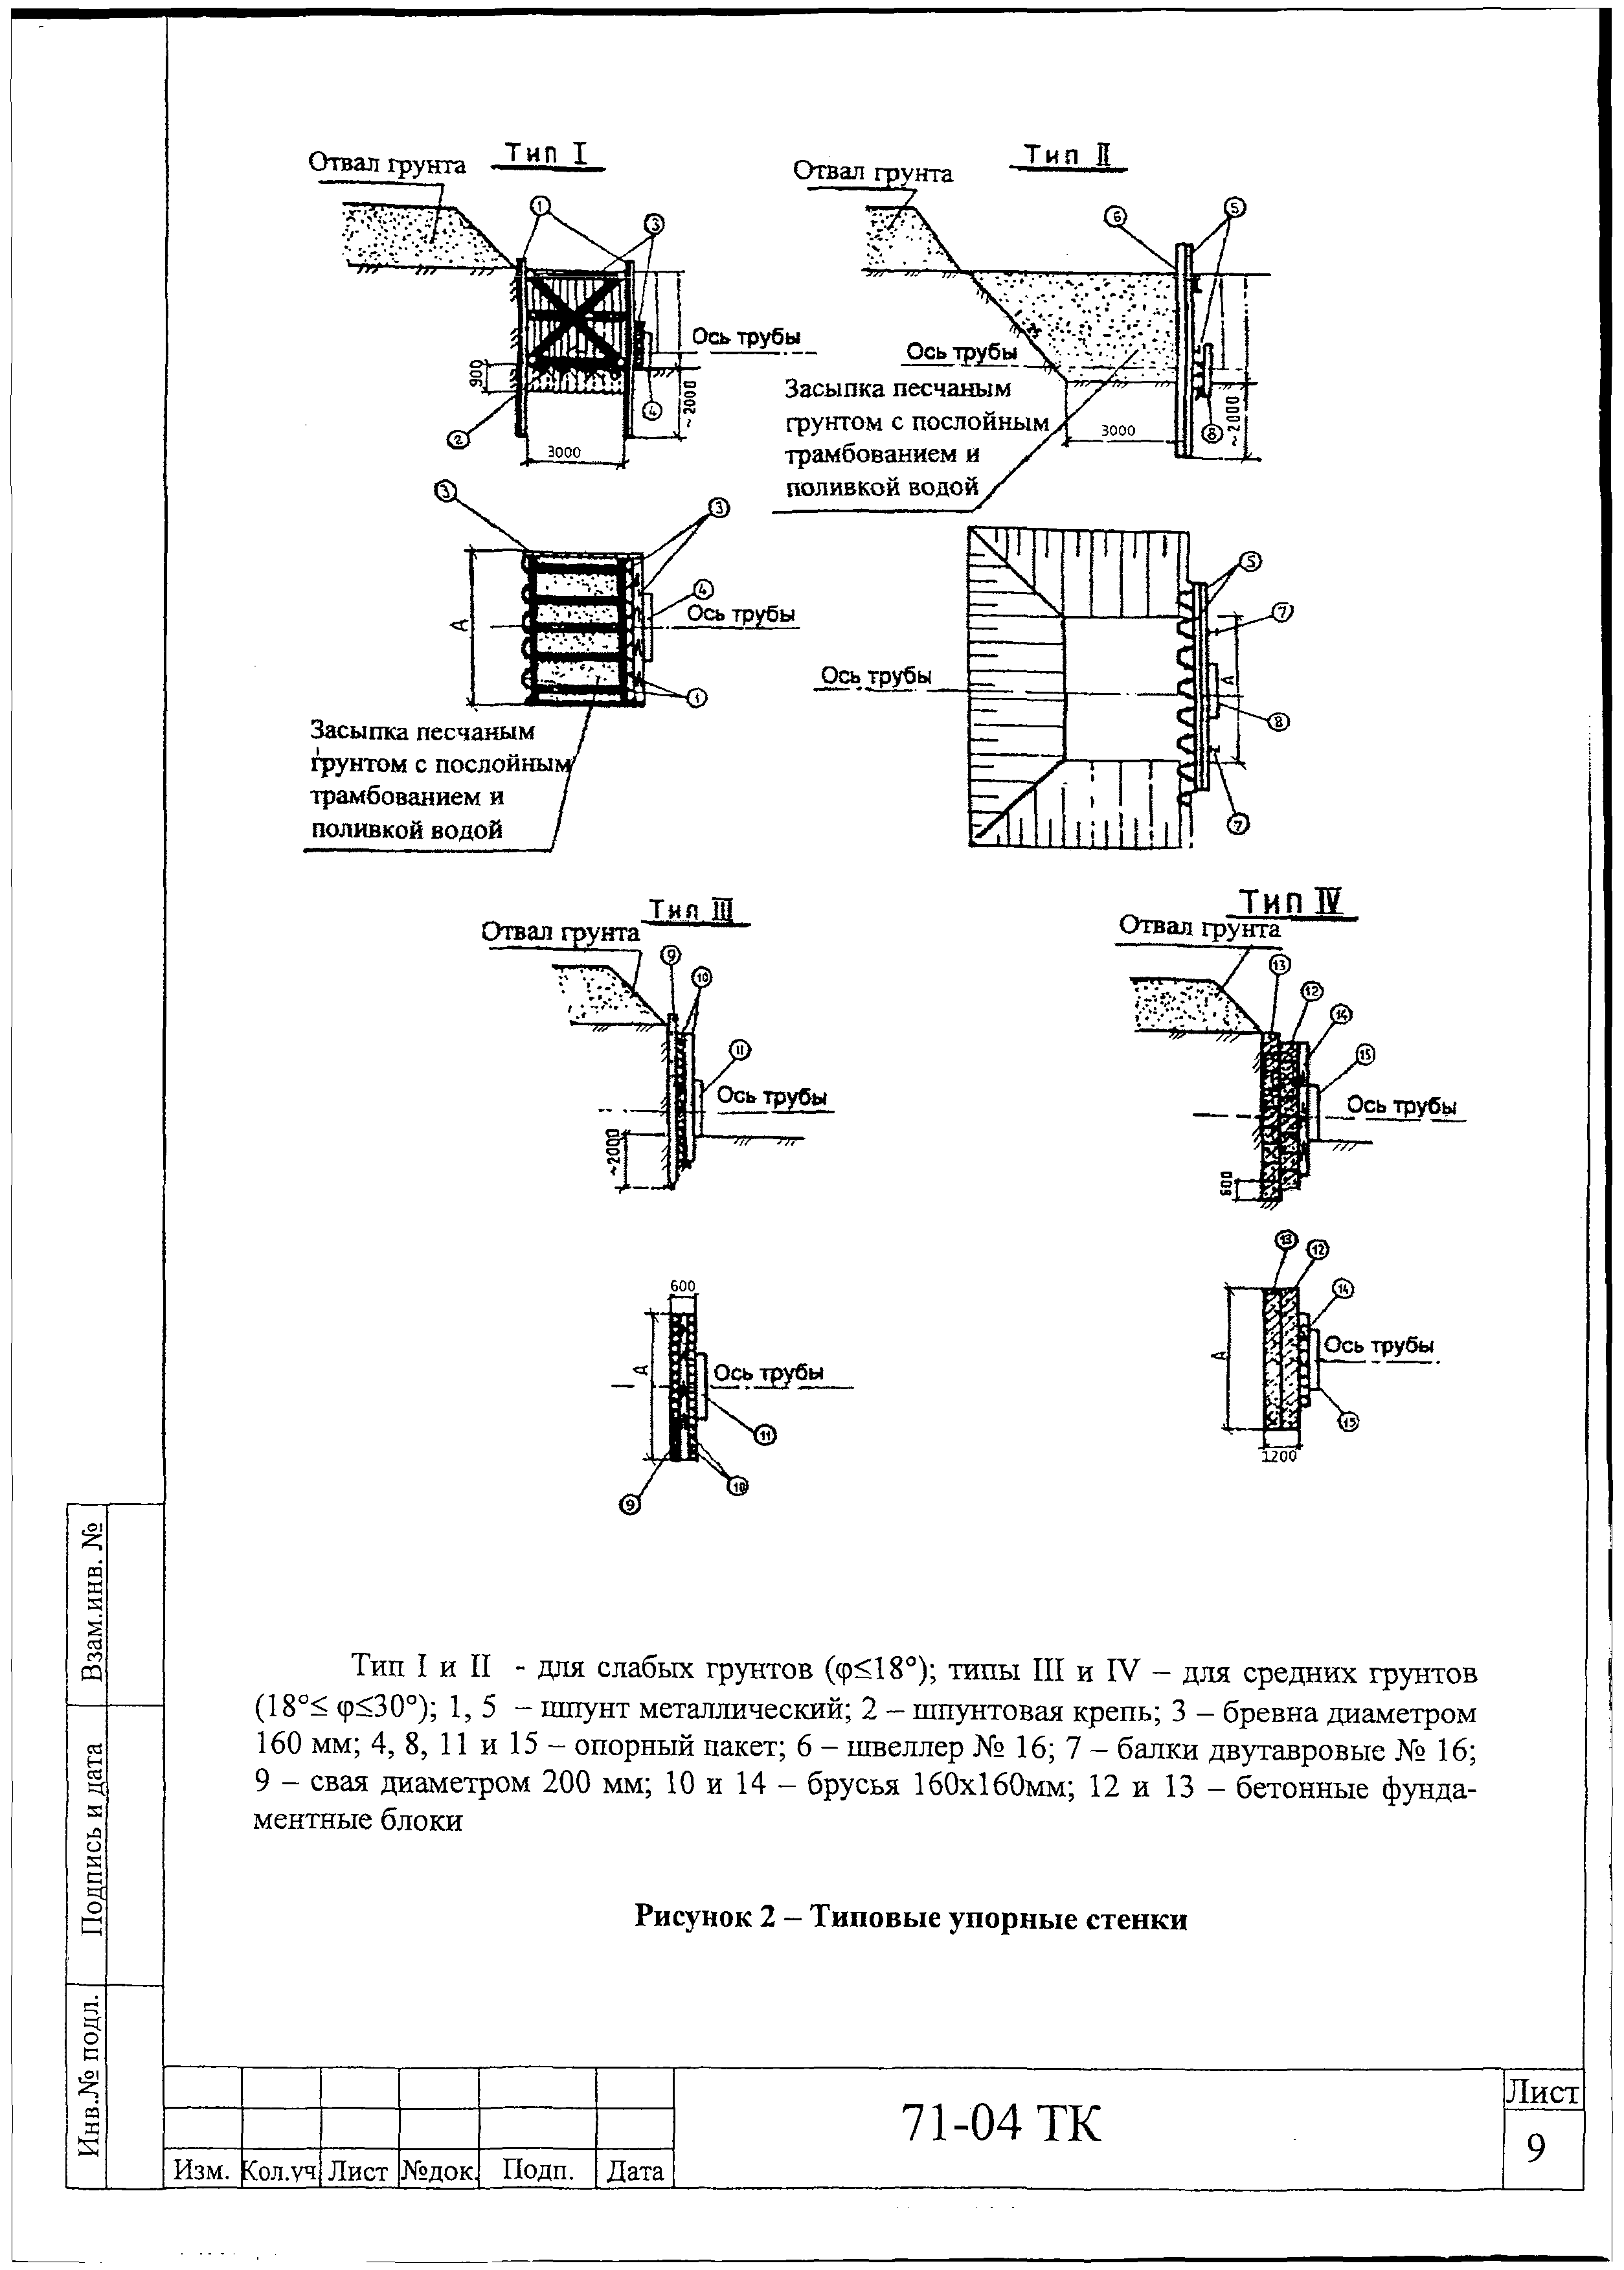 Технологическая карта 71-04 ТК